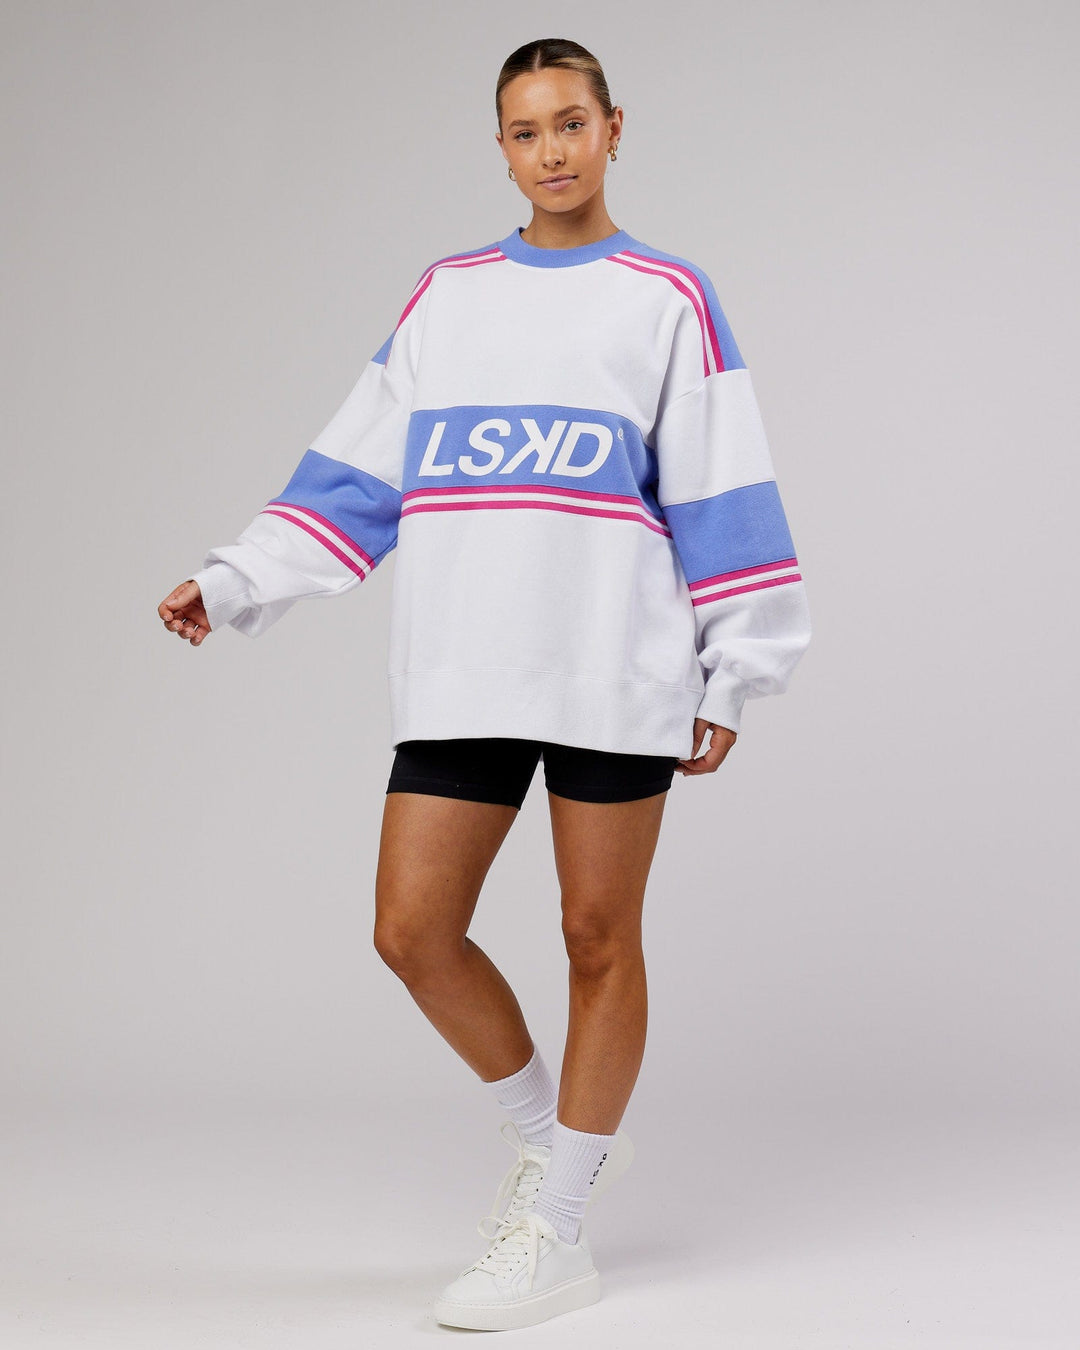 Unisex A-Team Sweater Oversize - White-Cornflower Blue